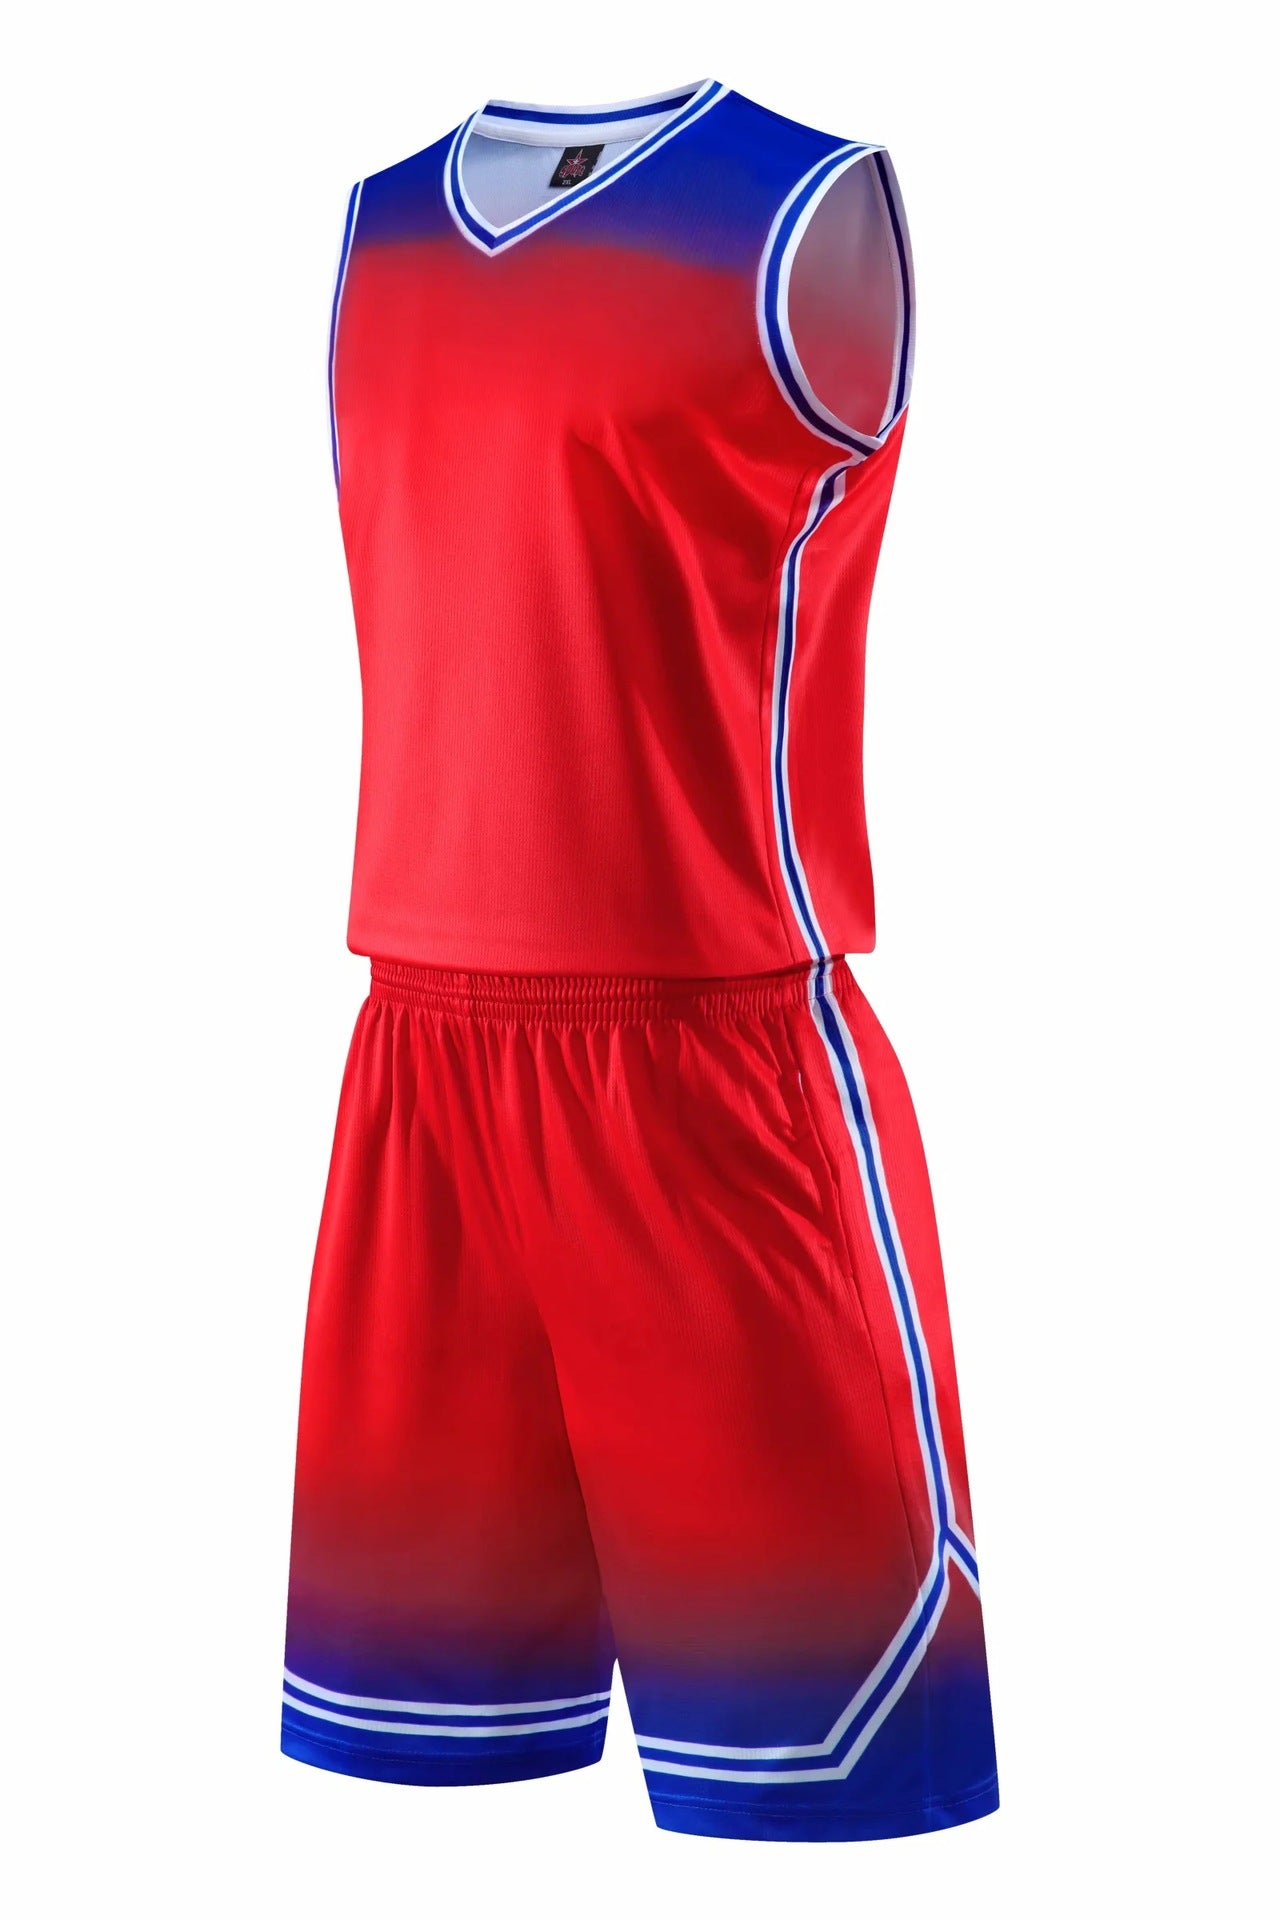 gradient-basketball-uniform-sports-suit-children-adult-sweat-absorbent-basketball-uniform